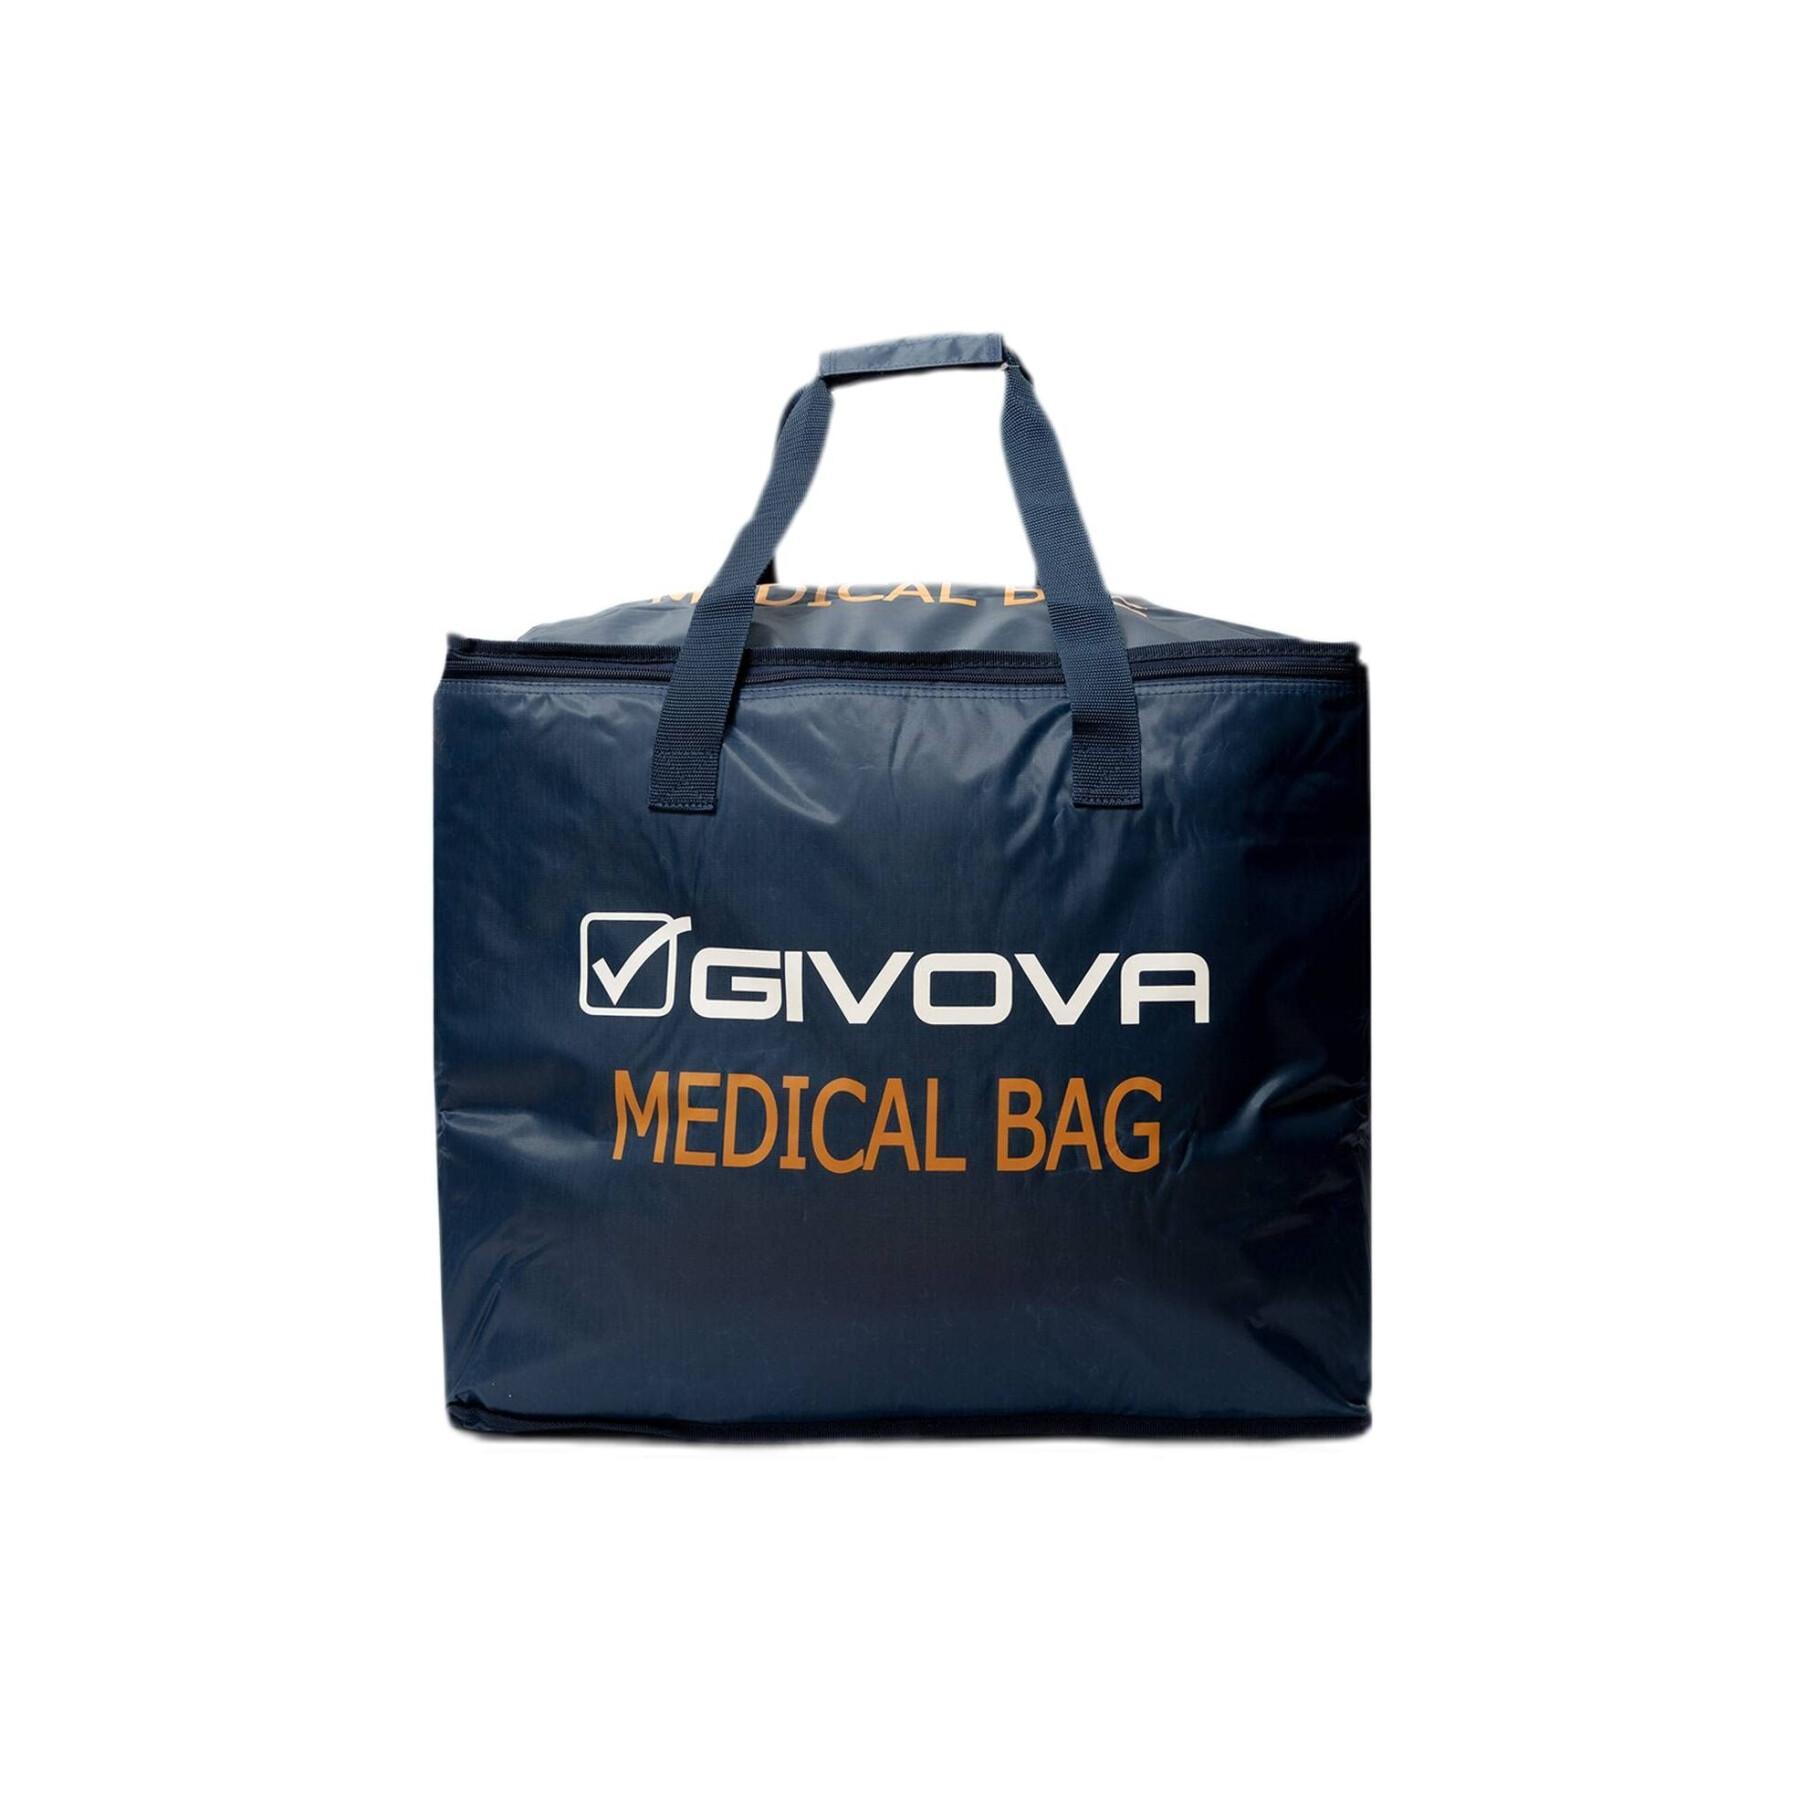 Medical bag Givova